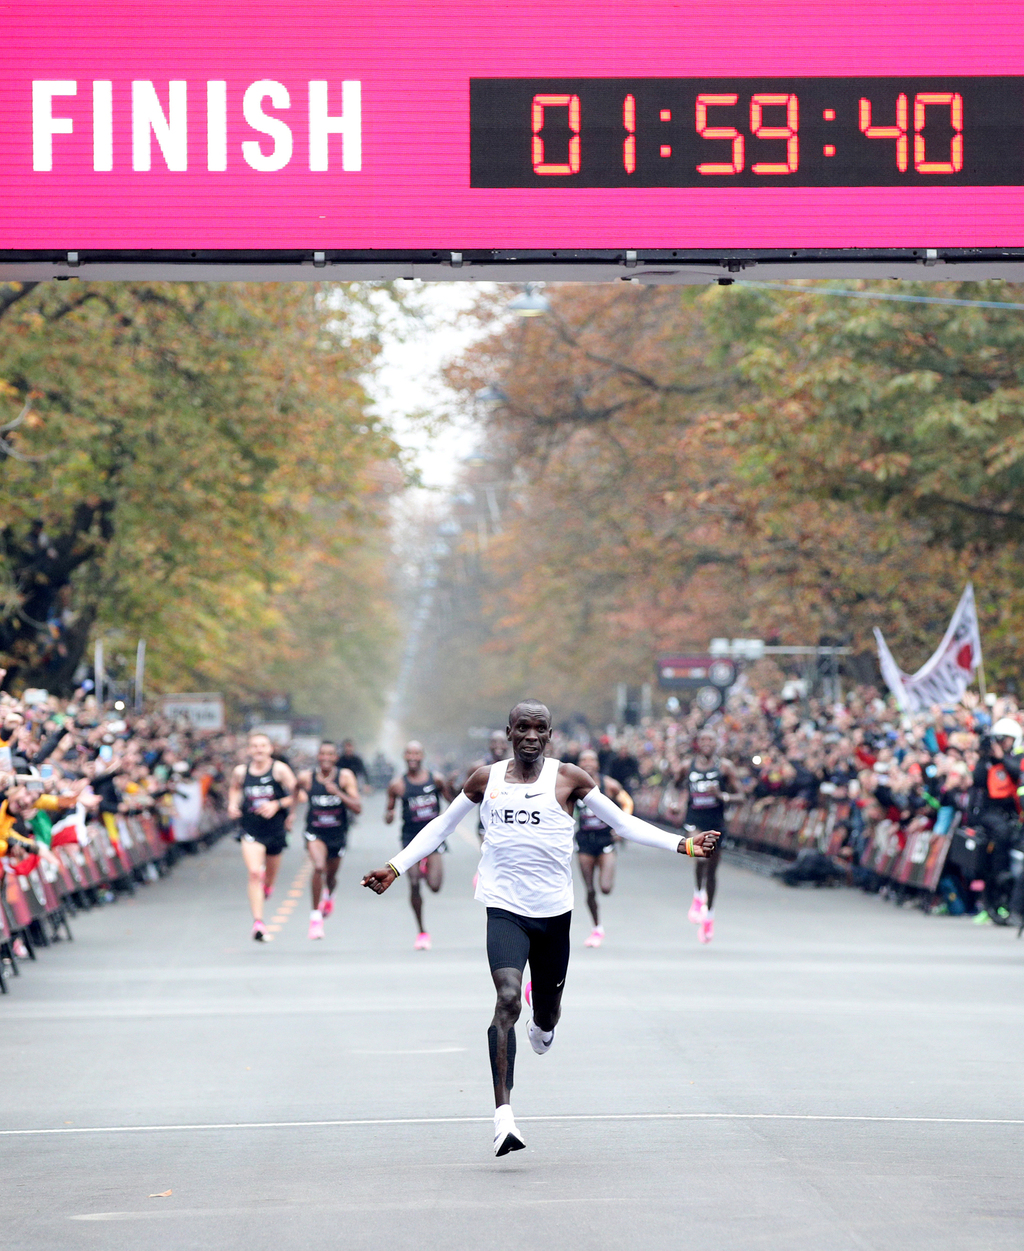 אליוד קיפצ'וגה שובר את מחסום השעתיים בריצת מרתון ב 2019 פנאי